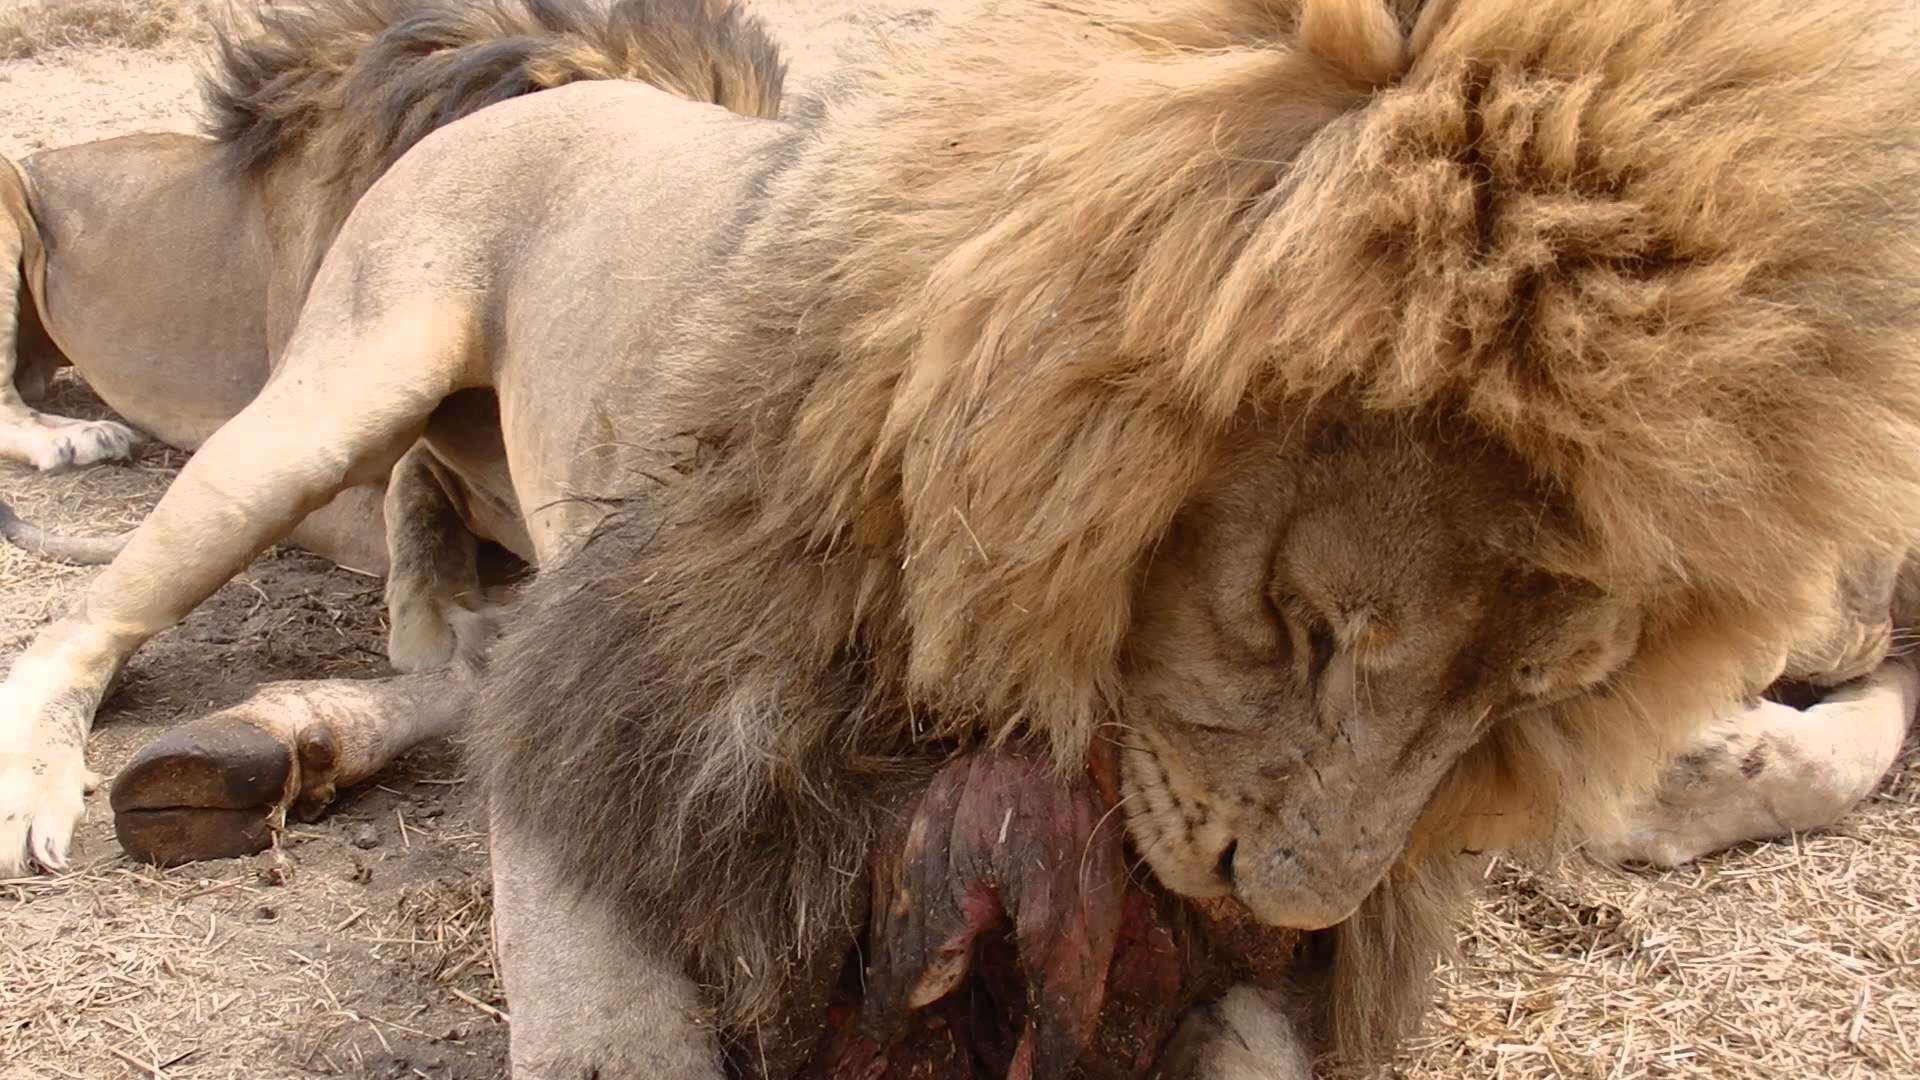 Feeding lion photo